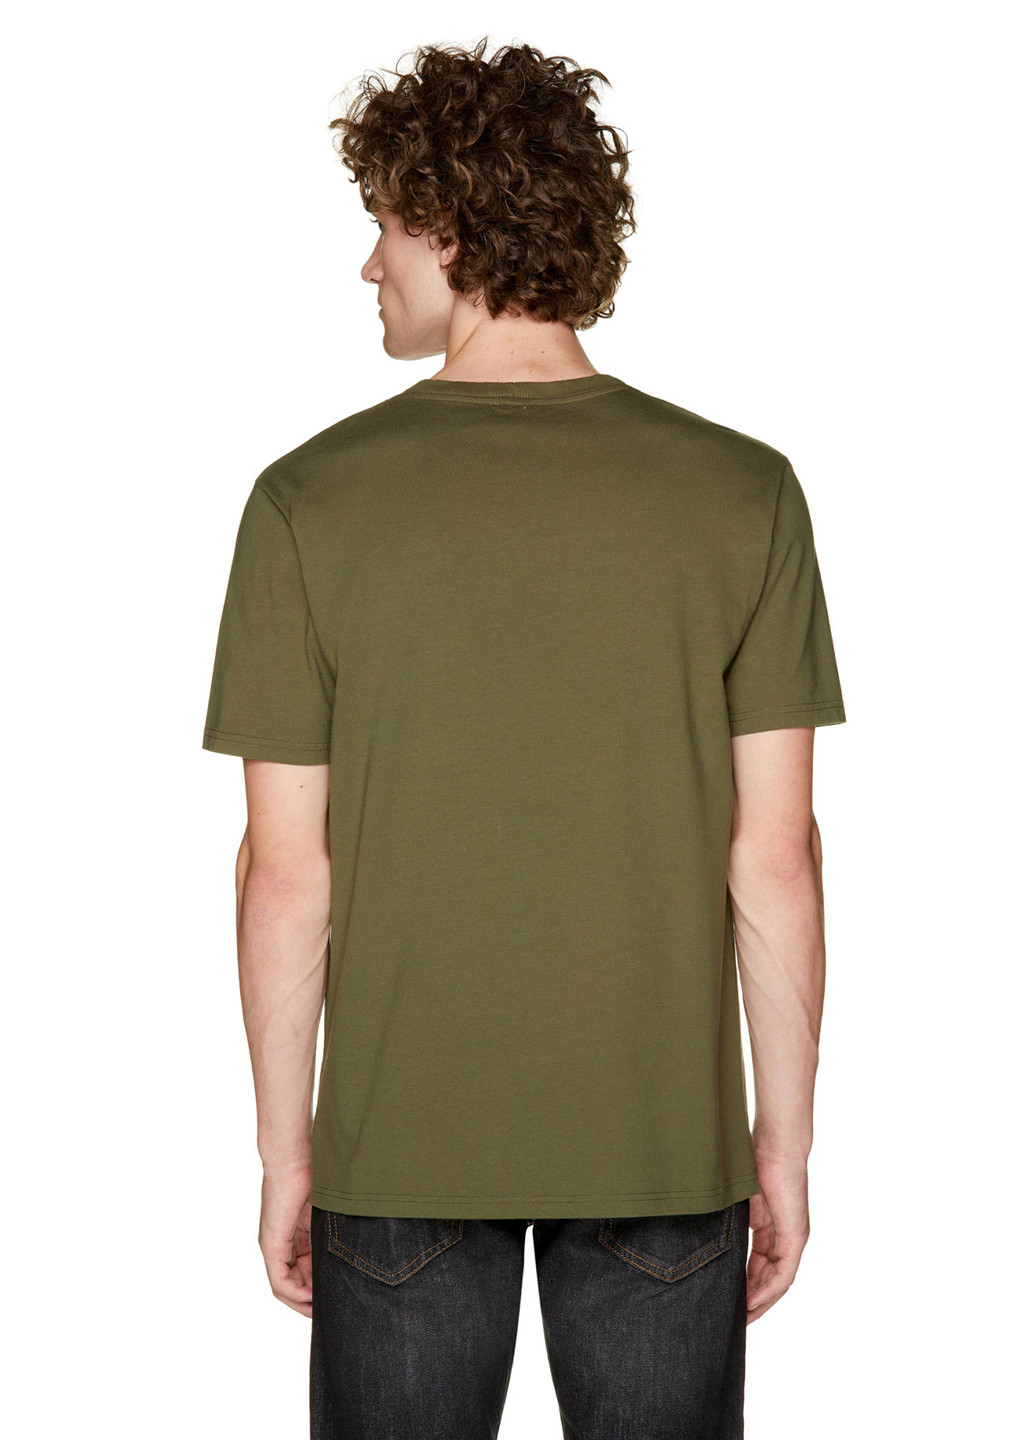 Хаки (оливковая) футболка United Colors of Benetton